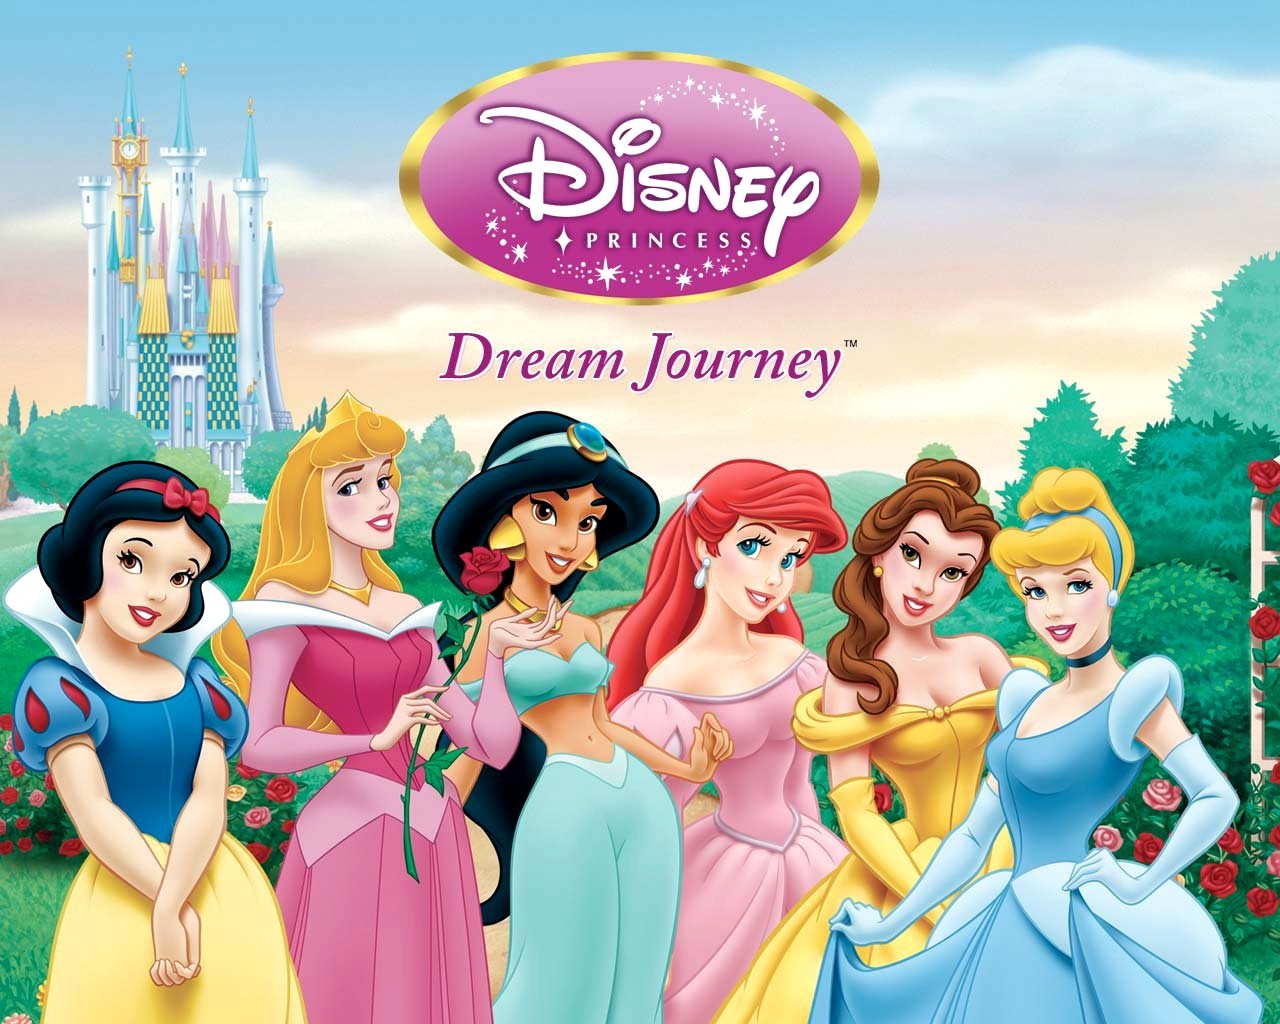 "Disney Princess" desktop wallpaper (1280 x 1024 pixels)